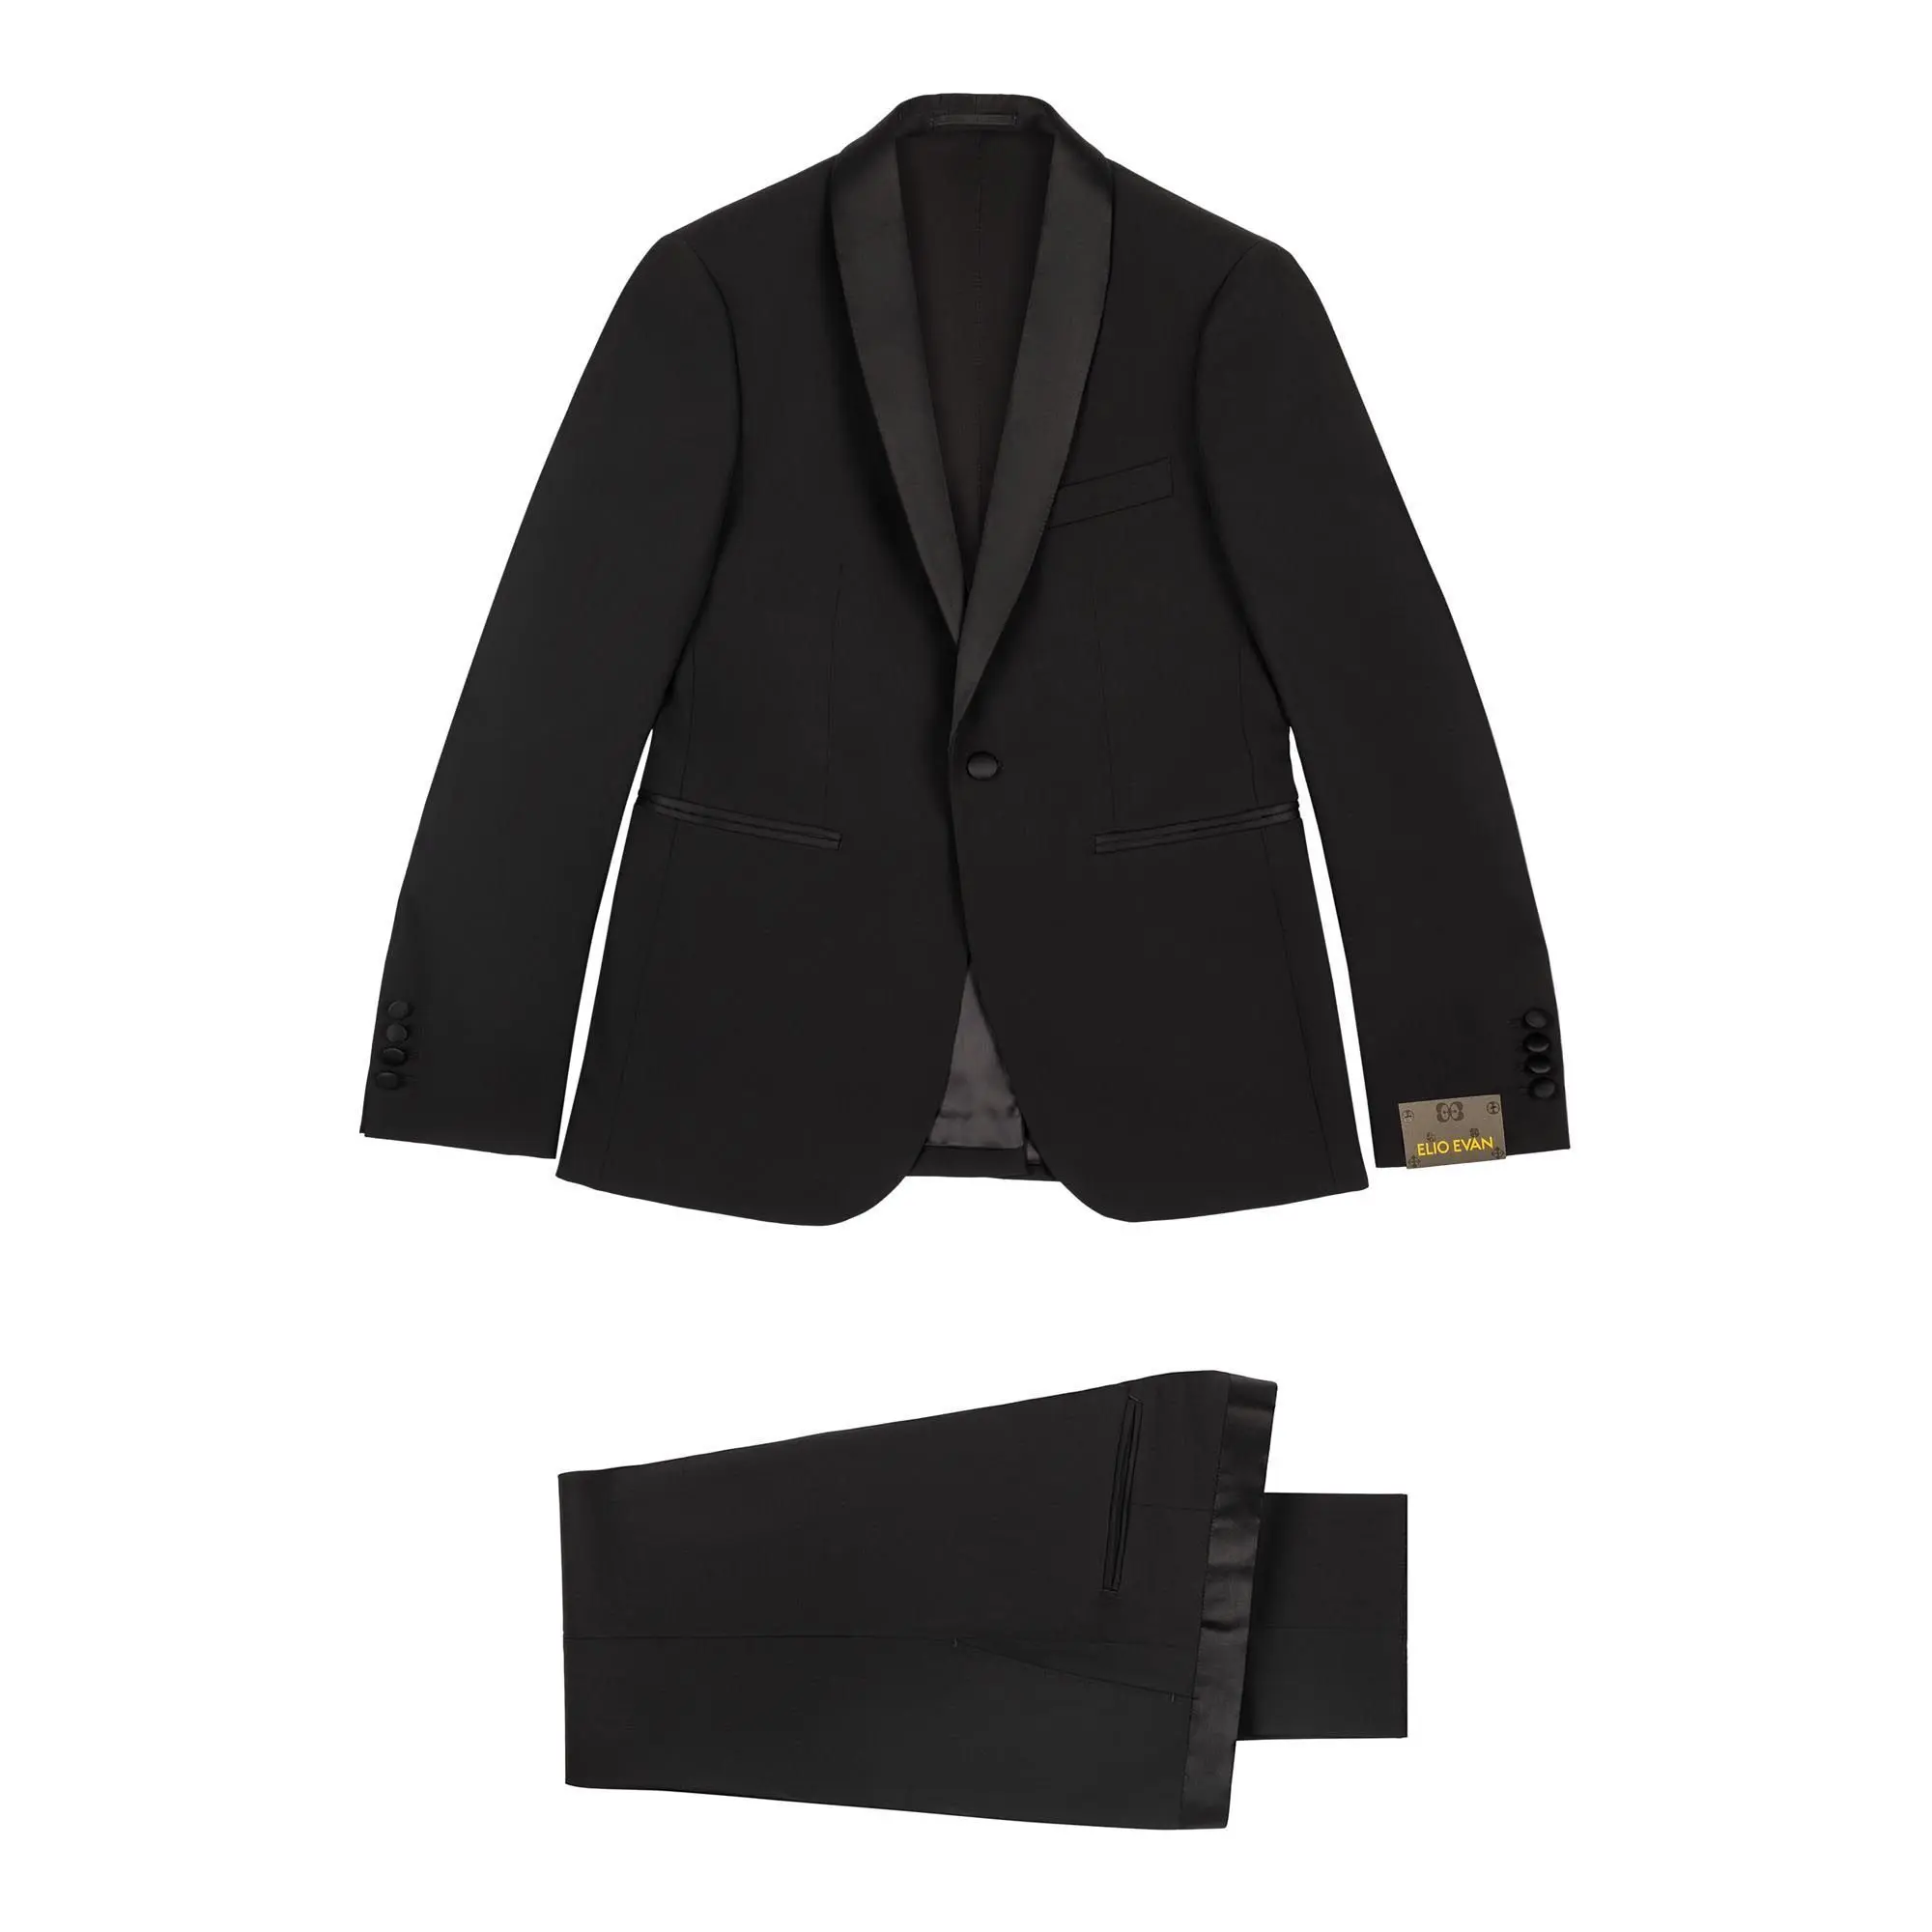 Ανδρικό Κοστούμι Σμόκιν Με Γιλέκο Crepe Μαύρο Tailor Italian Wear